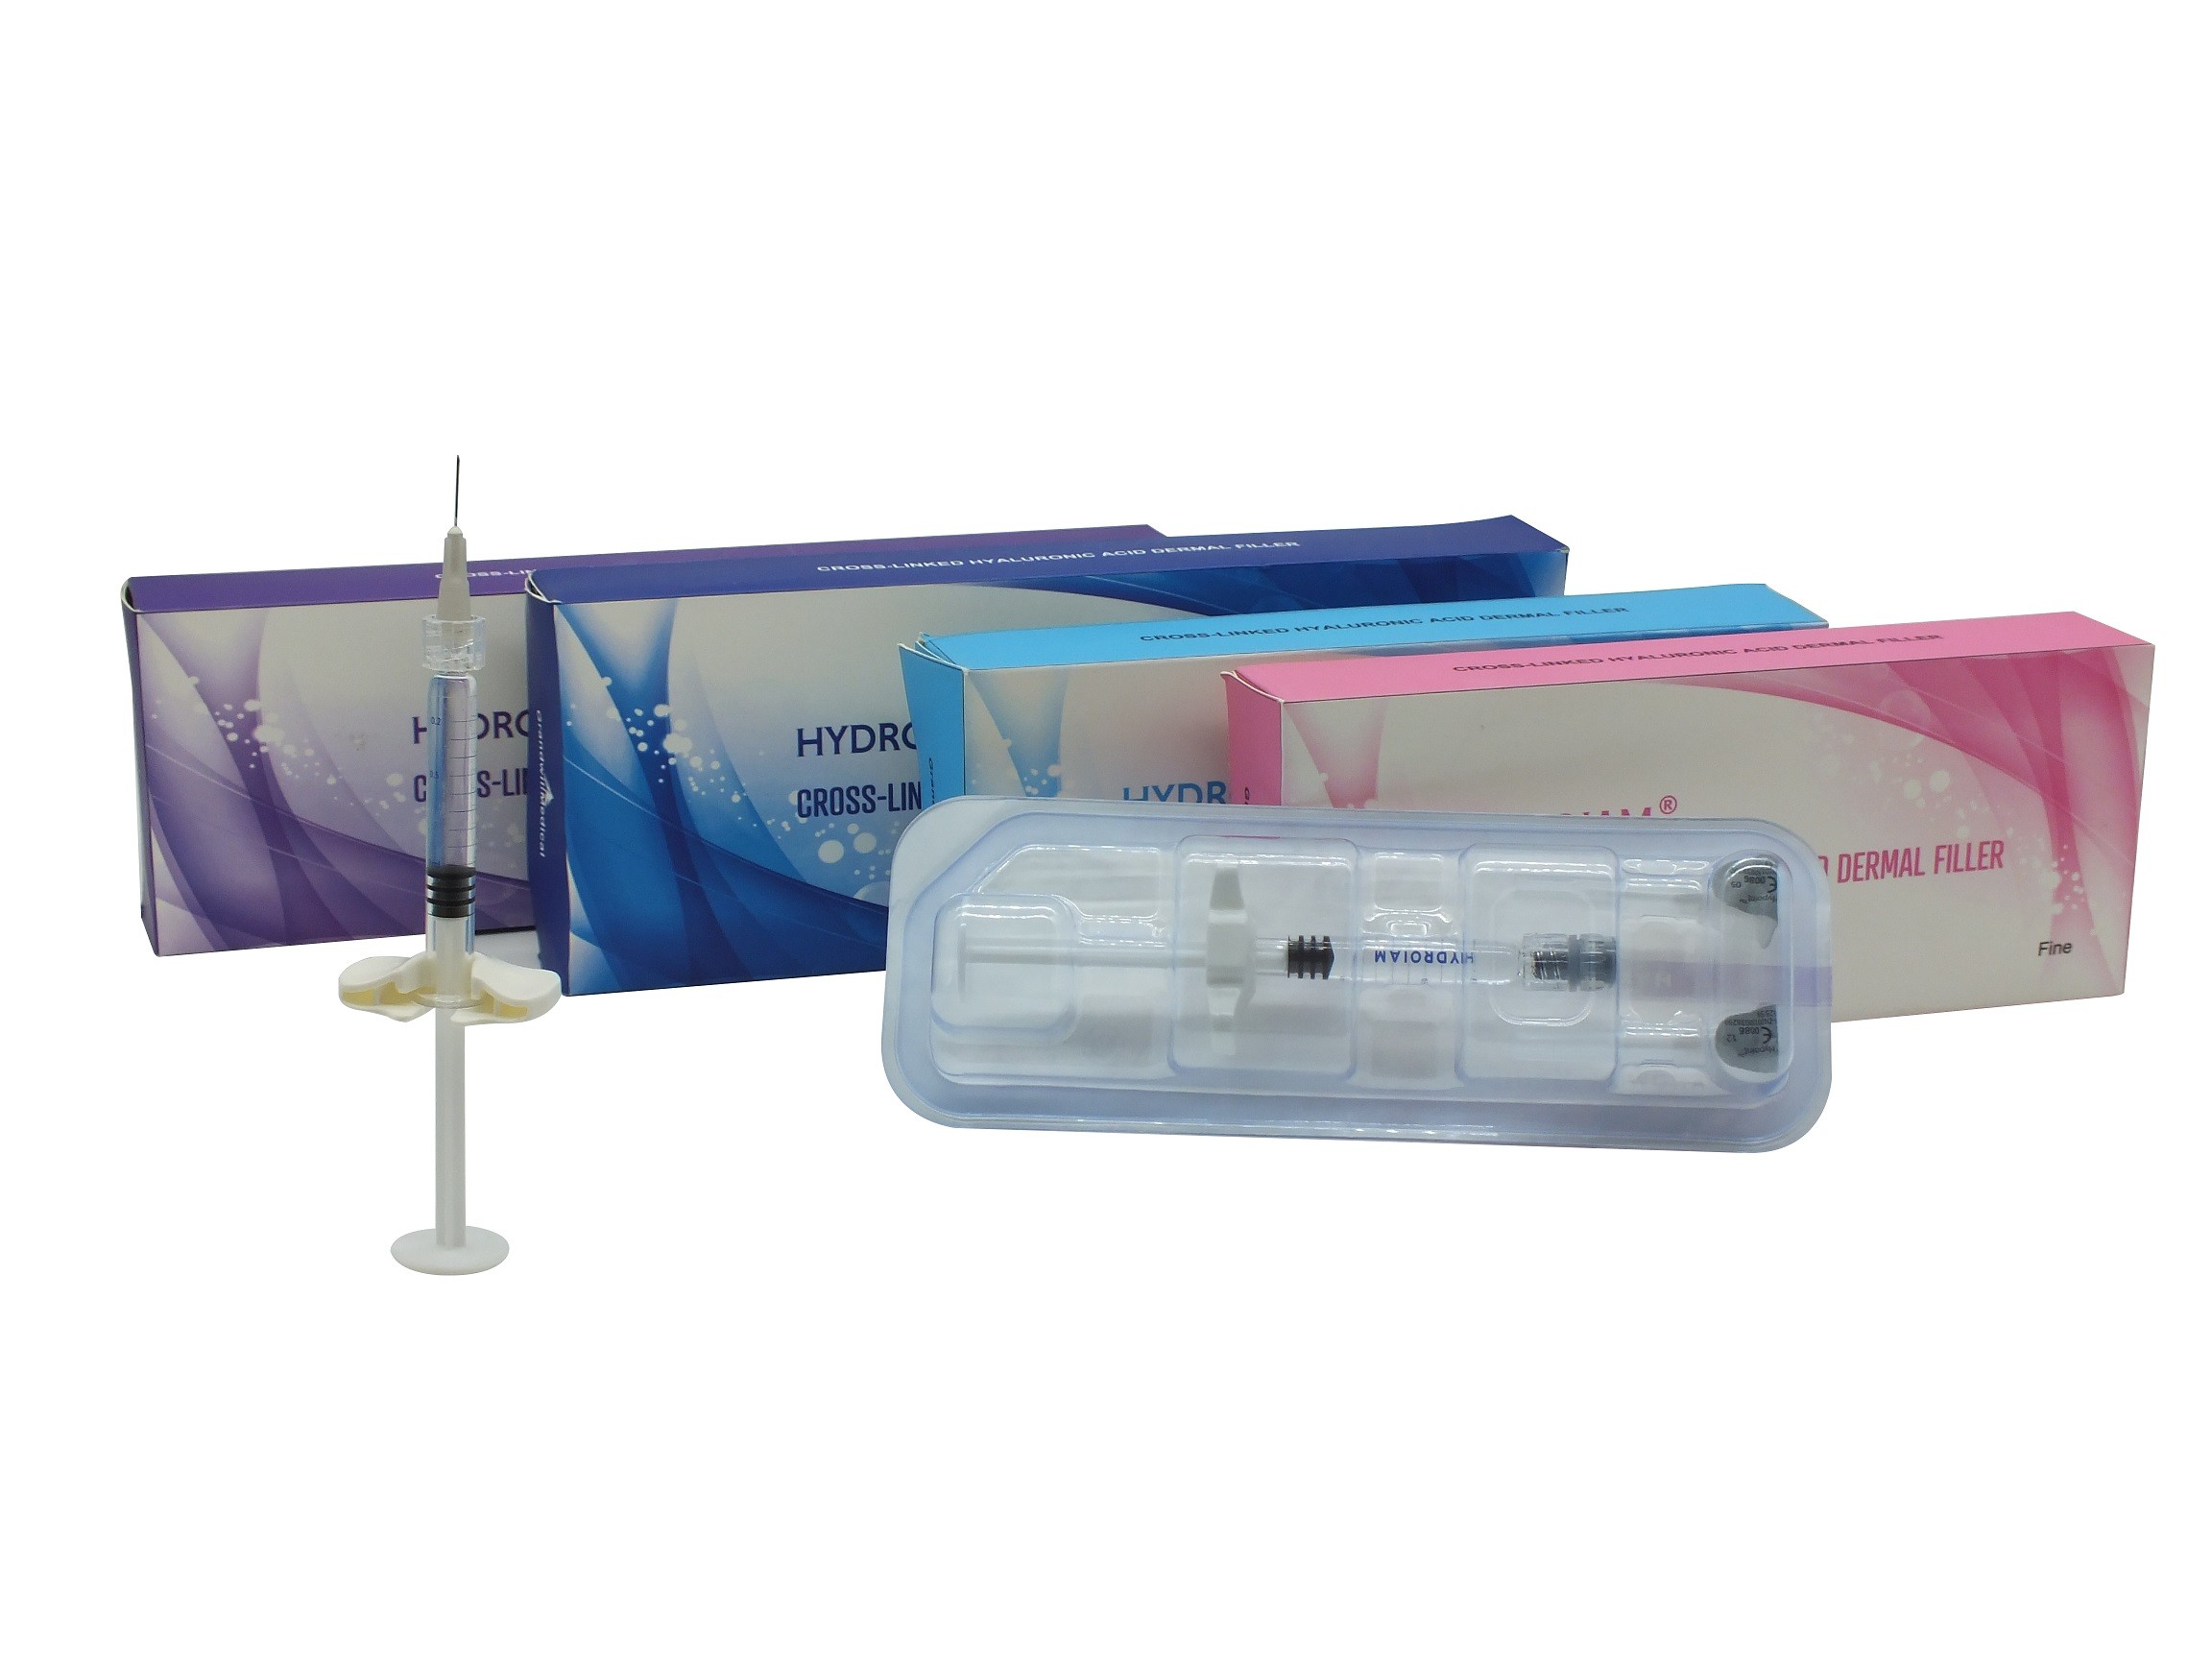 Llenador 1ml antienvejecedor 2ml del gel del ácido hialurónico de las inyecciones del labio de la cirugía plástica